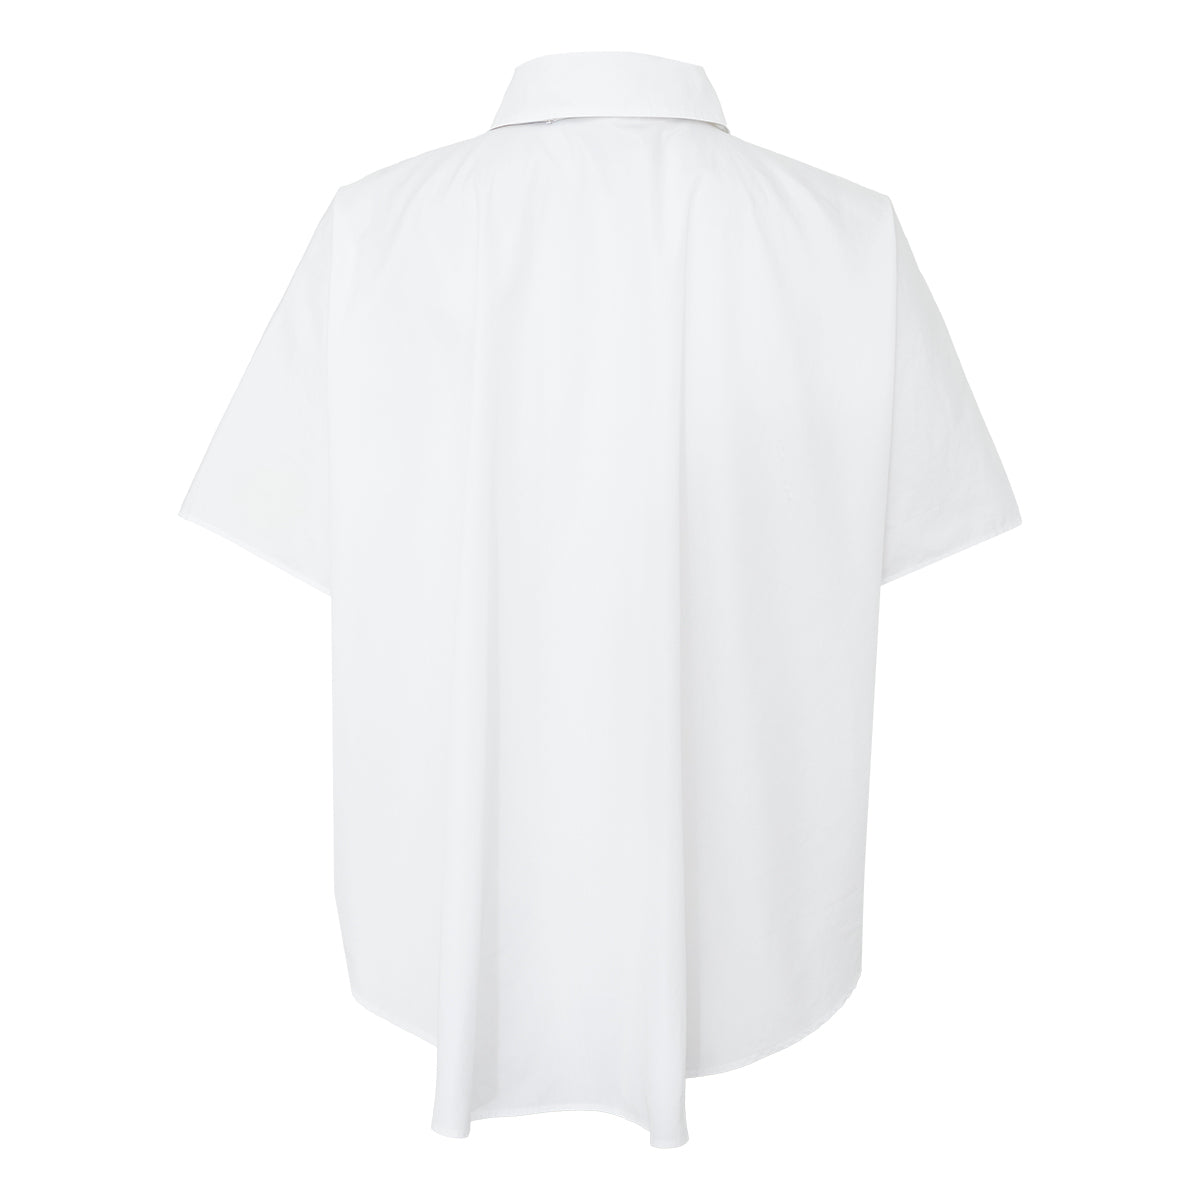 Camisa Christian Dior Branca com Lenço Tam. 42 Br